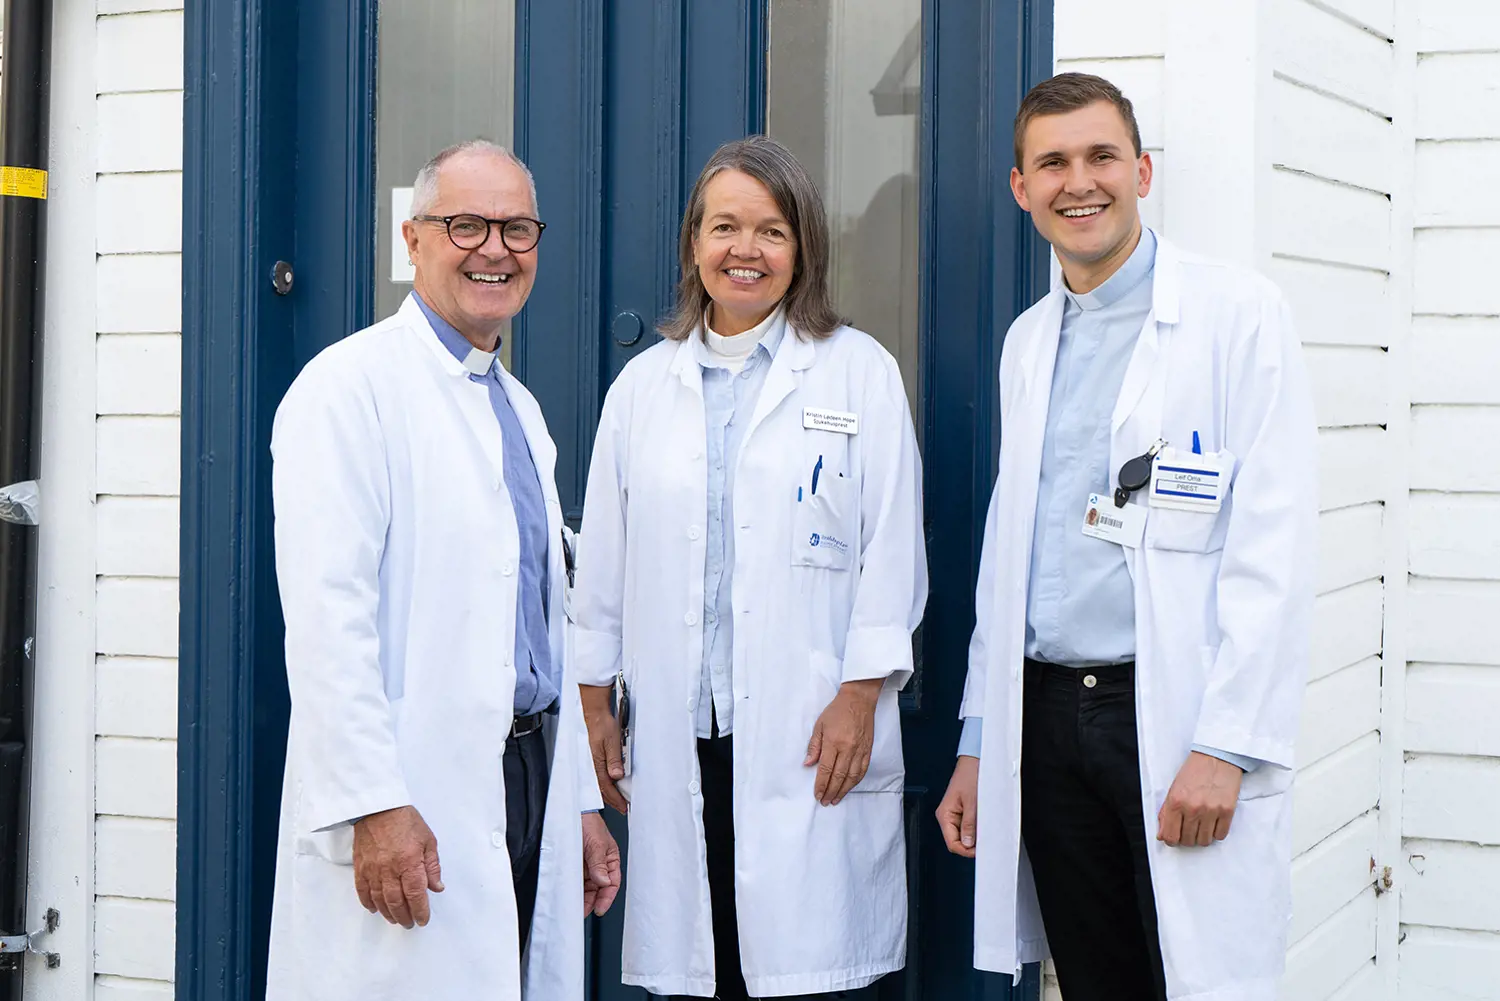 Tre smilende sykehusprester i hvite frakker står foran en blå dør